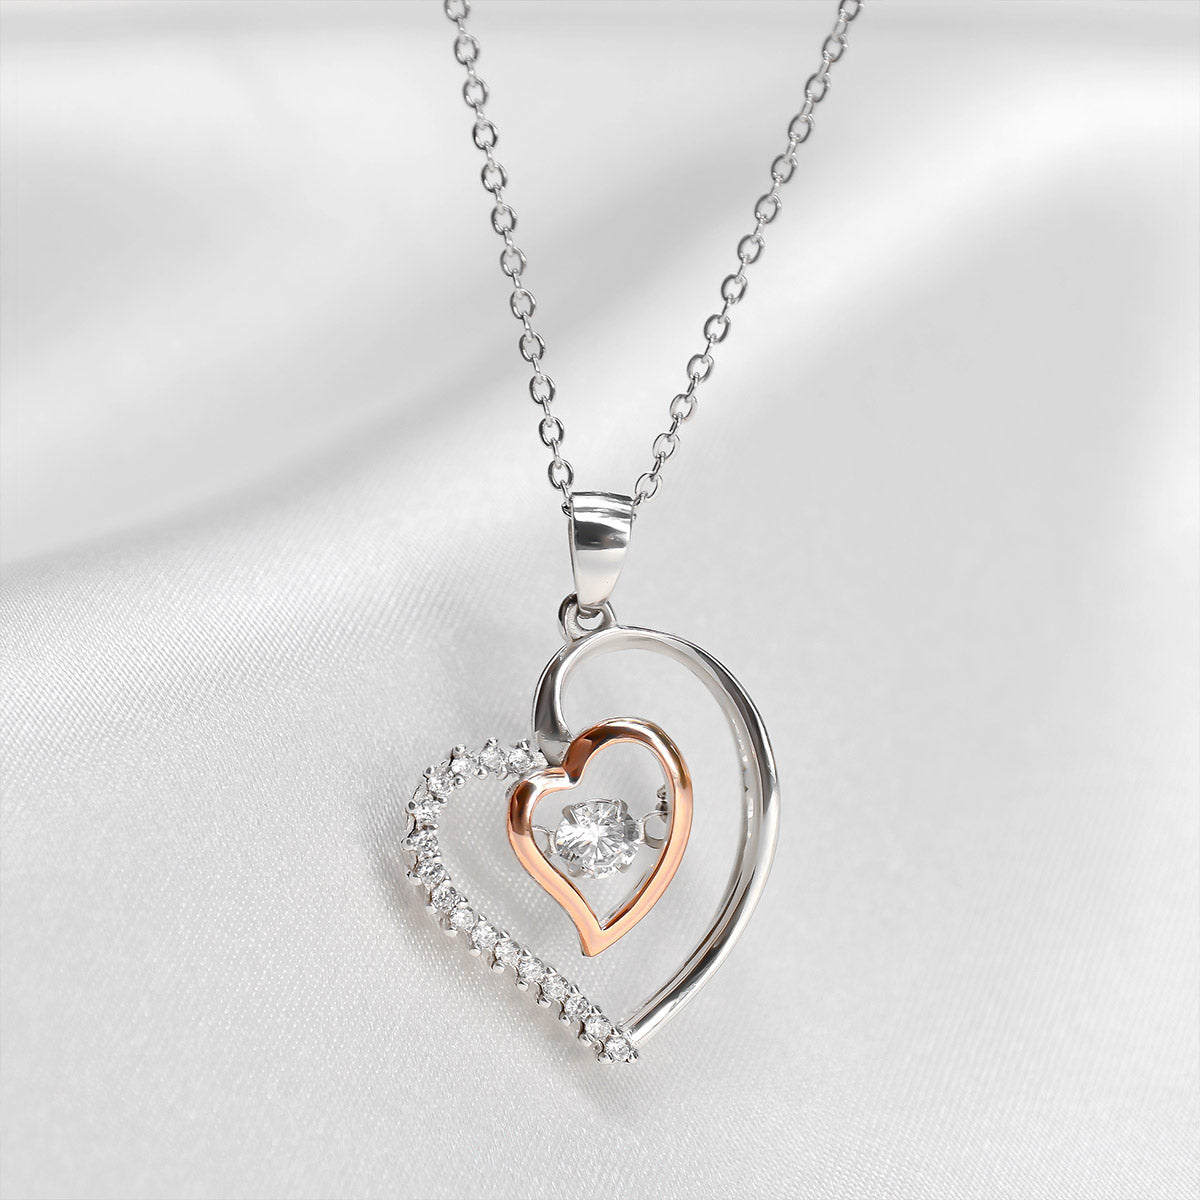 Bestie, Straighten Your Crown - Luxe Heart Necklace Gift Set